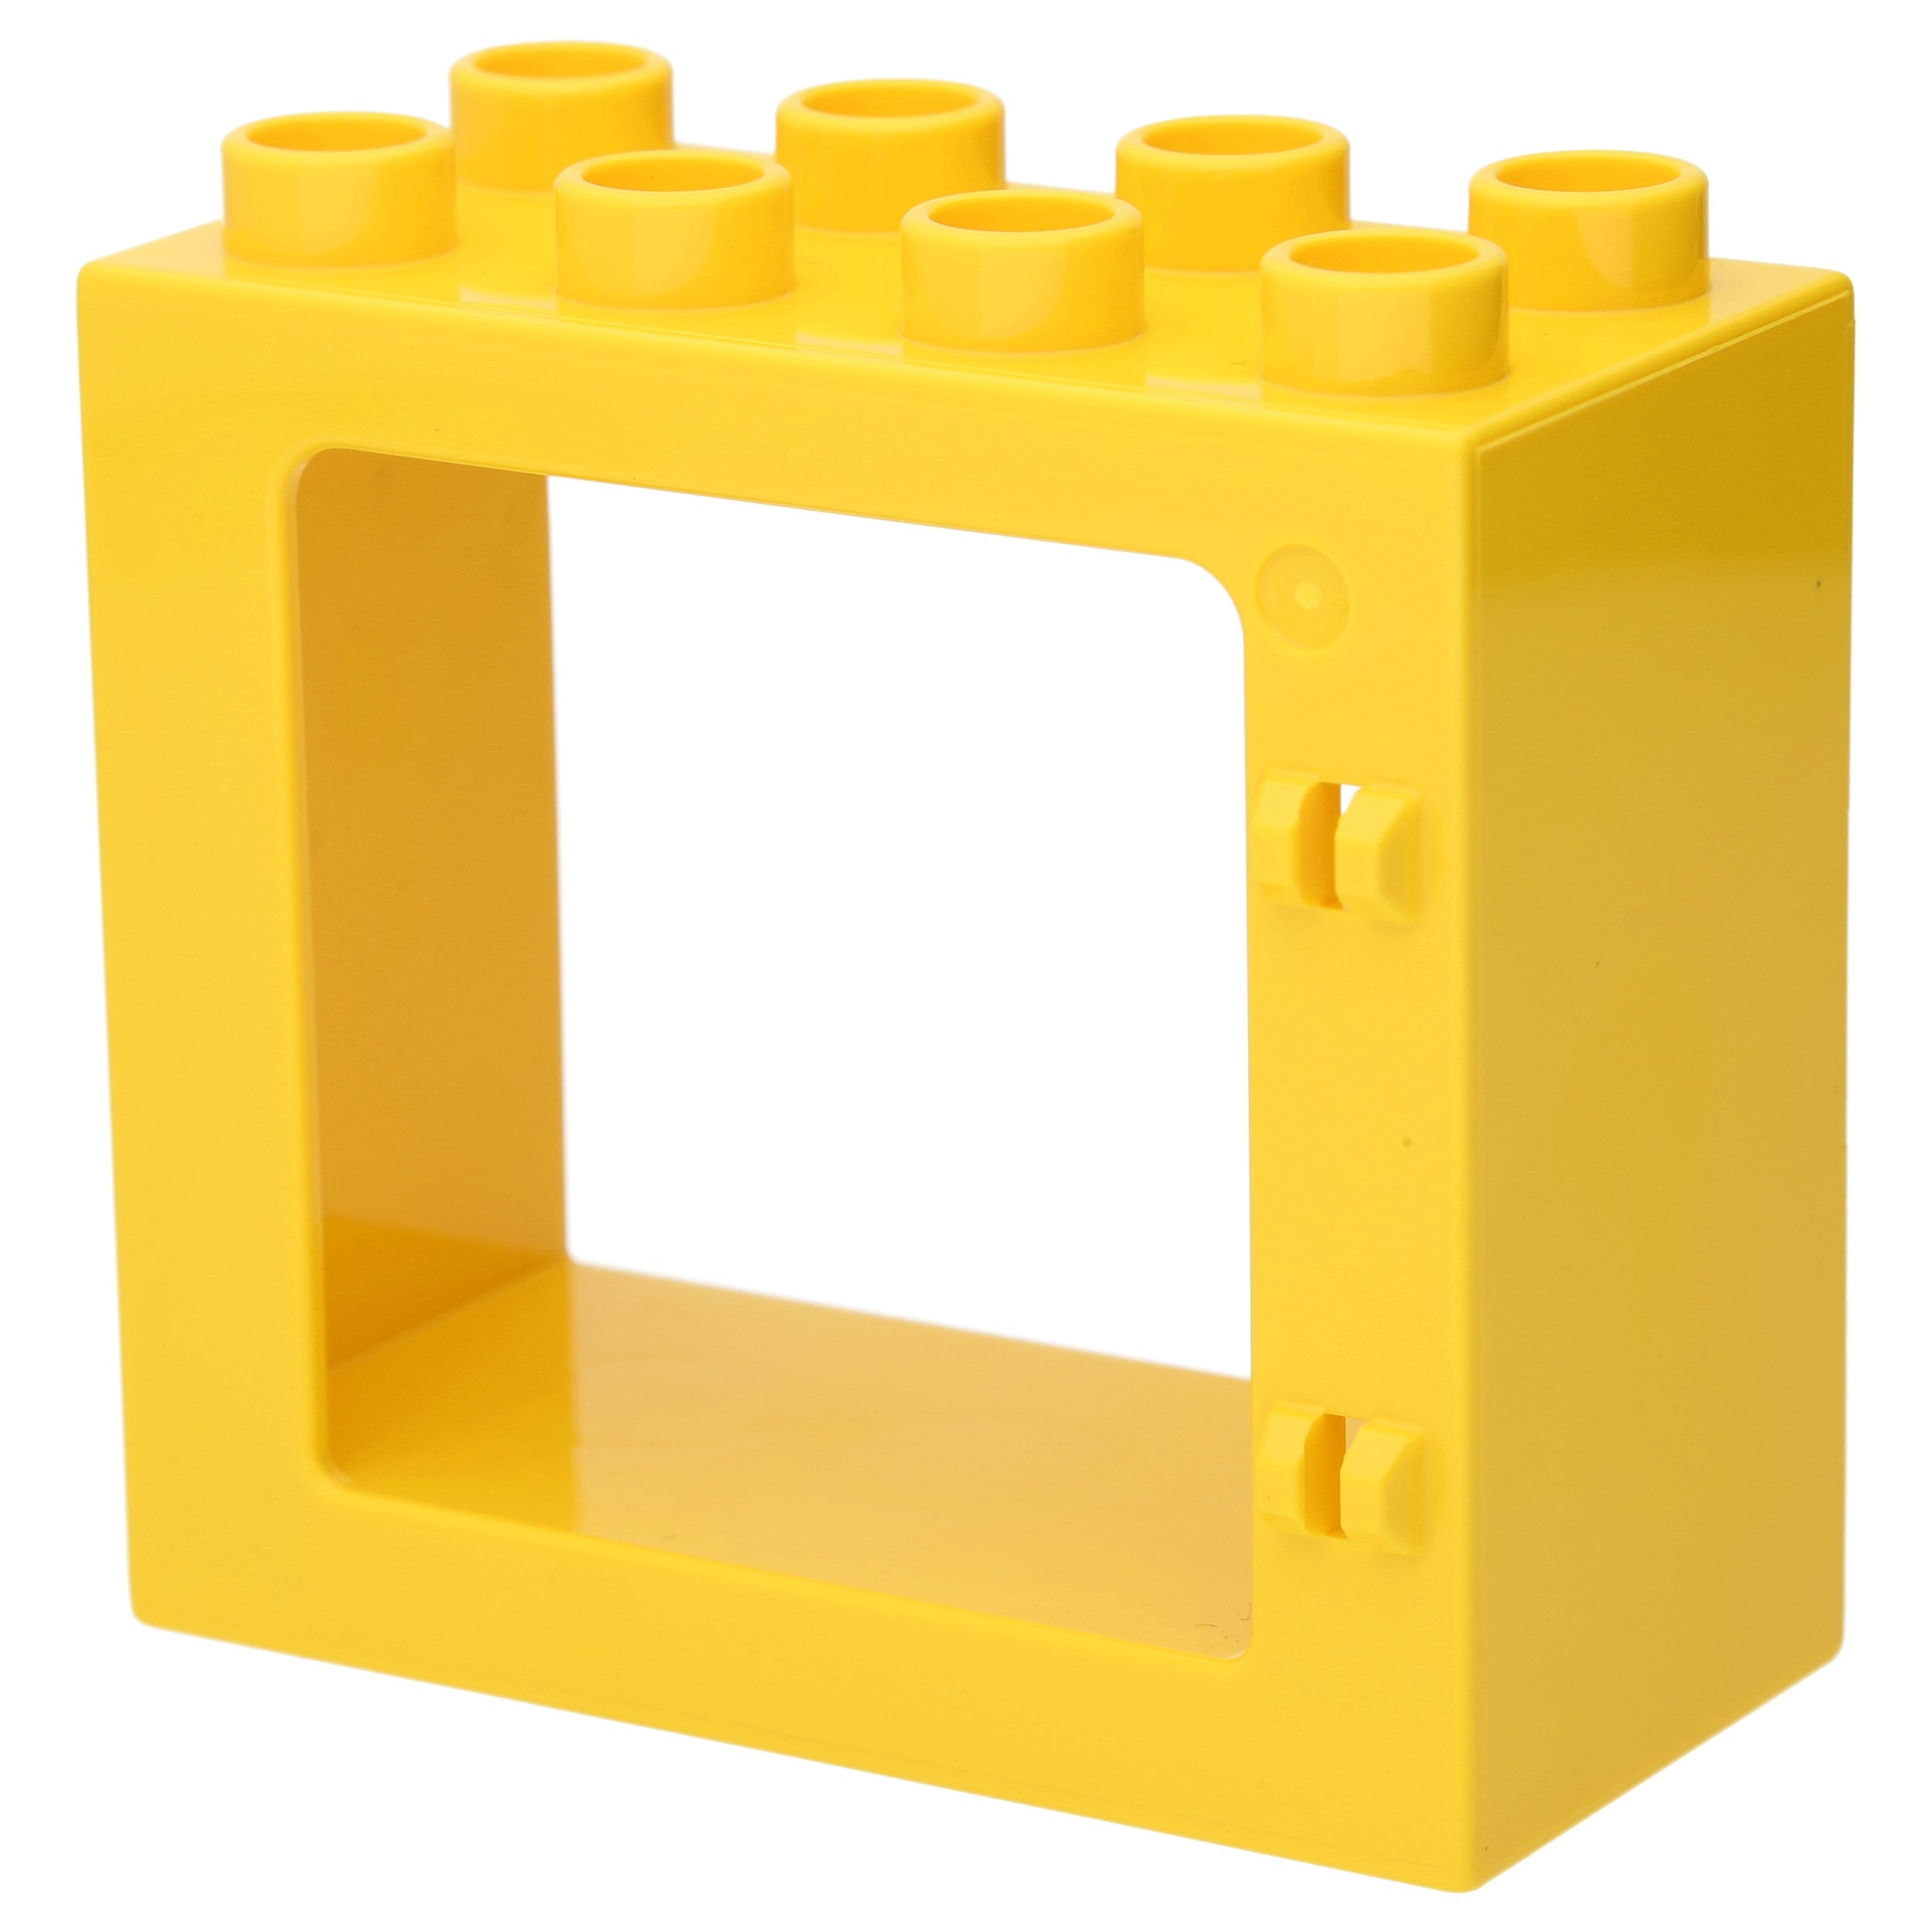 LEGO DUPLO Haus & Hof - door/ window frame 2 x 4 x 3 with flat front